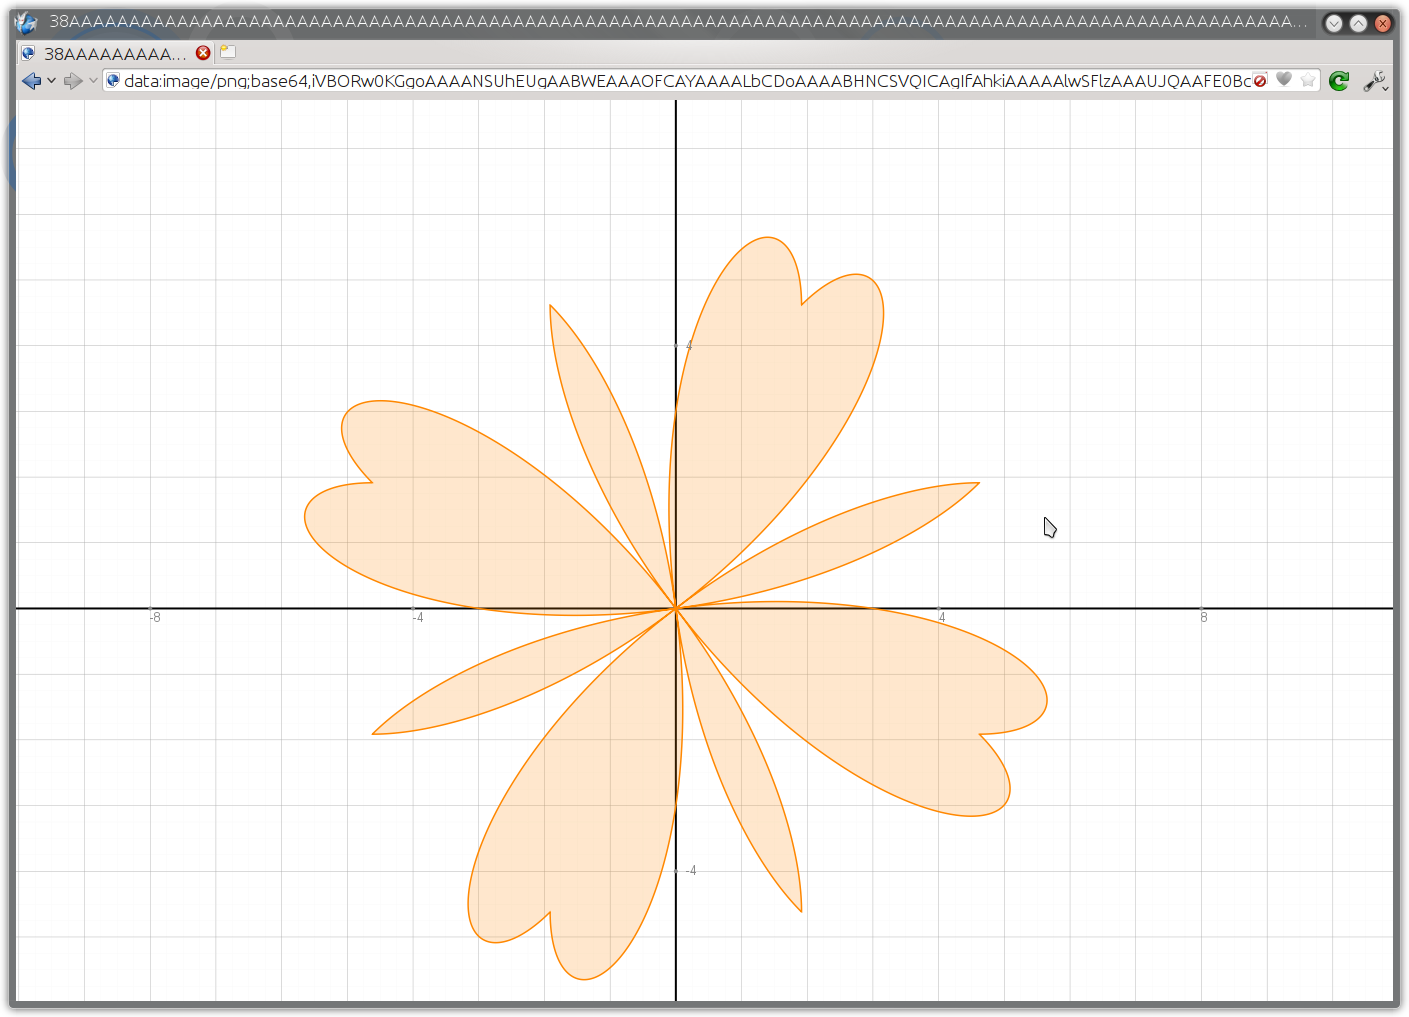 galleryimage:Graph.tk antaa piirrettyjen kuvaajienbittikarttakuvan käyttäjälle avaamalla selaimeen base64-koodatunpng-kuvan, jonka käyttäjä voi tallentaa normaalinapng-tiedostona.